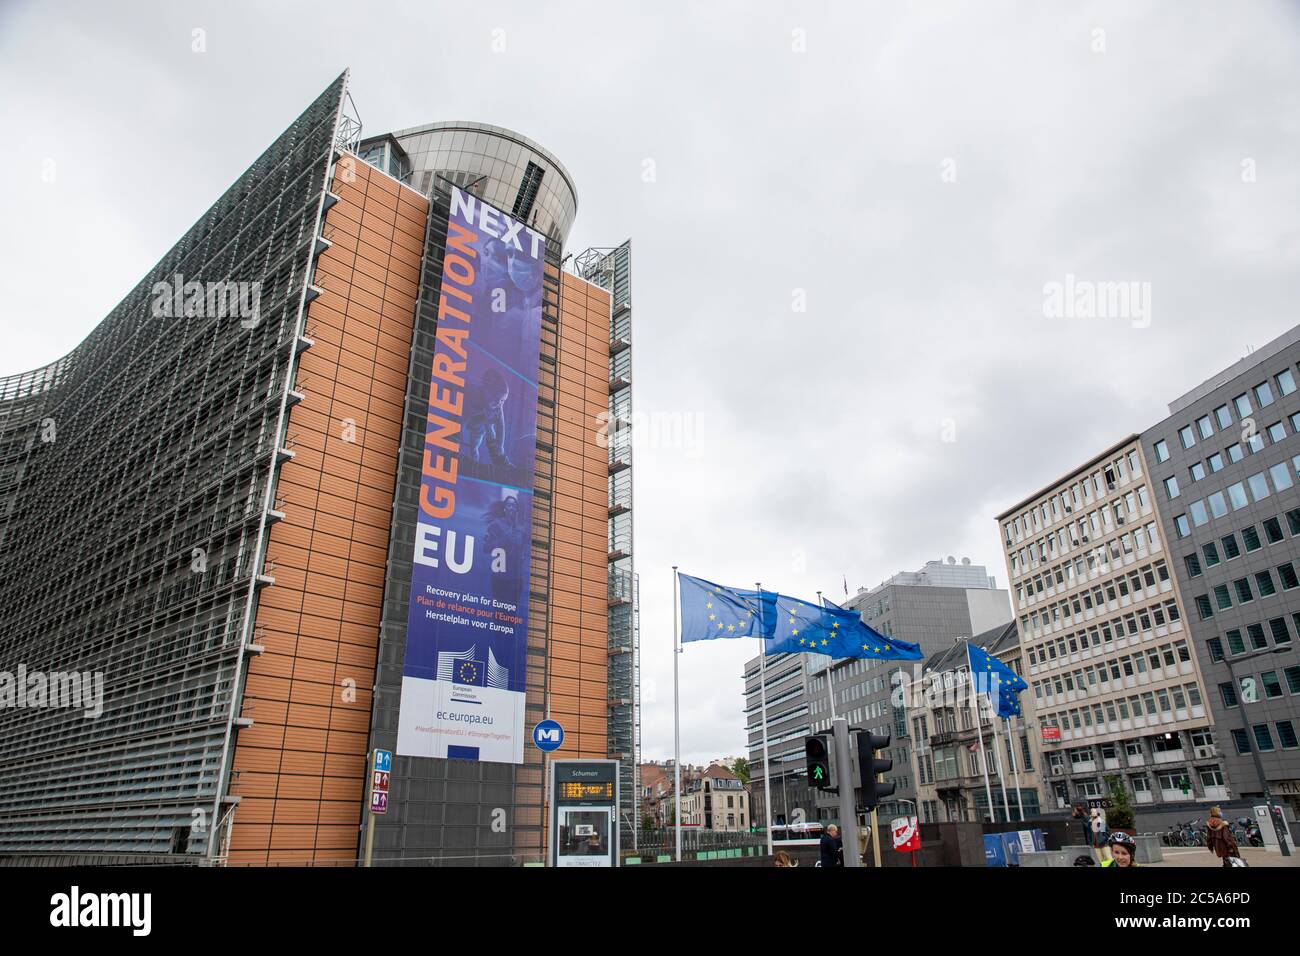 BRÜSSEL, Belgien - 1. juli 2020: Banner der nächsten Generation EU vor dem berlaymont-Gebäude, dem Sitz der Europäischen Kommission Stockfoto